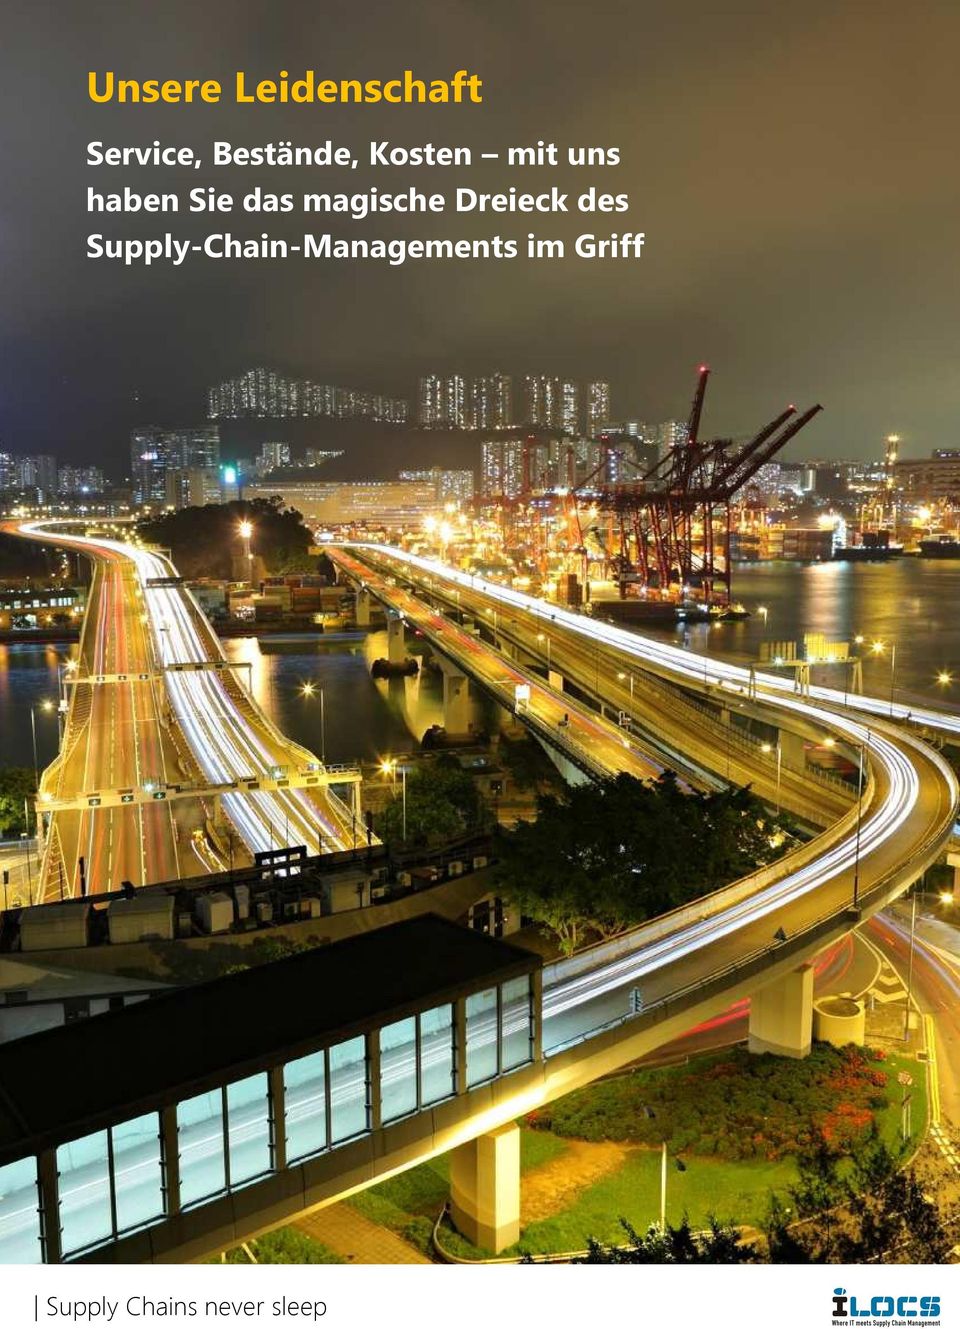 Dreieck des Supply-Chain-Managements